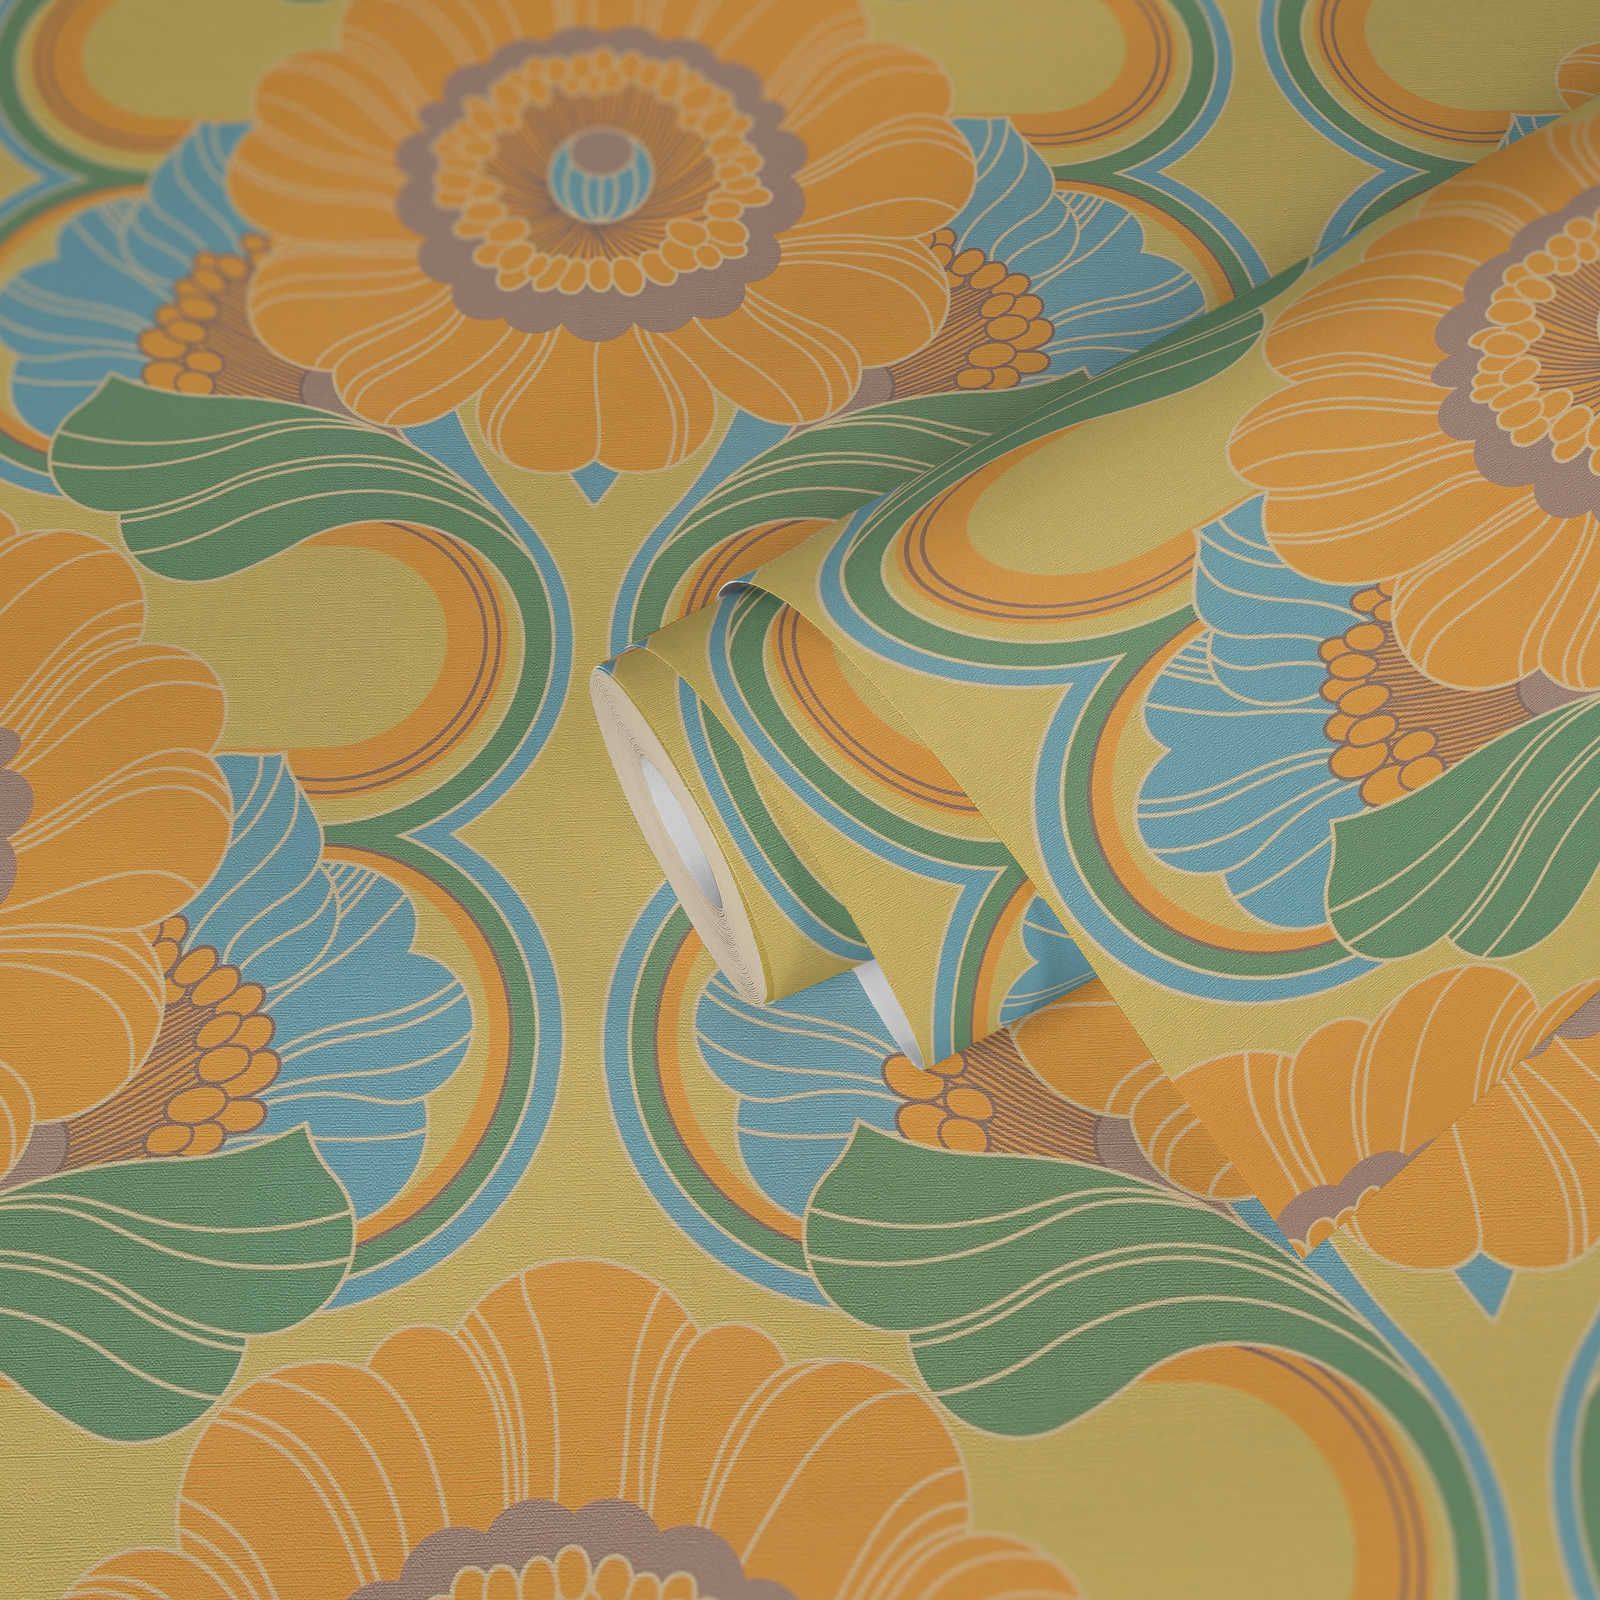             leicht strukturierte Retro Tapete mit floralem Muster – Blau, Gelb, Grün
        